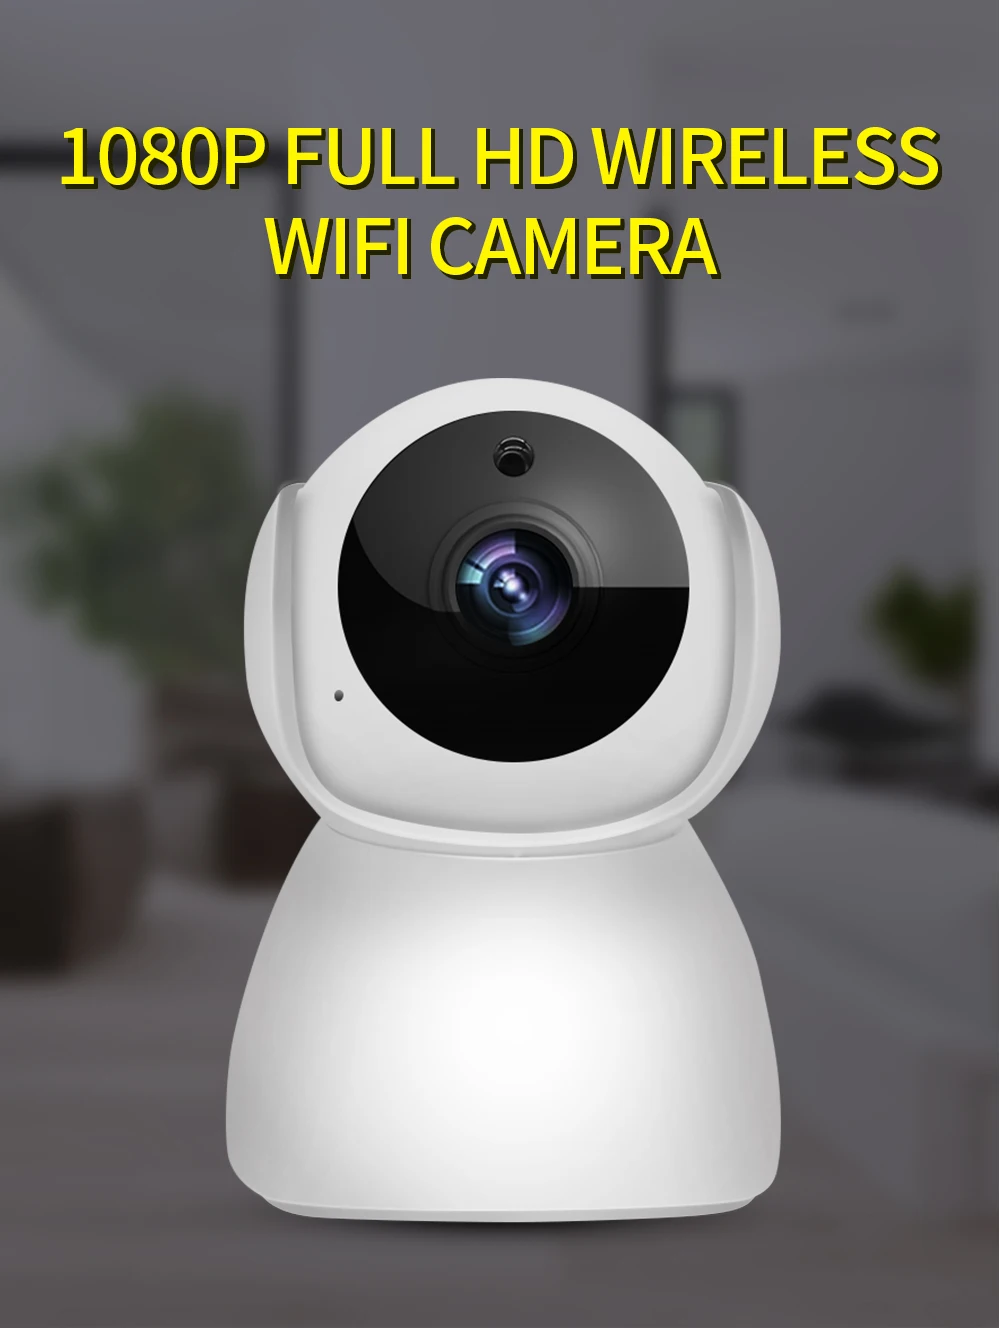 SDETER 1080P IP камера, беспроводная CCTV камера видеонаблюдения, домашняя камера безопасности, Wifi камера, 2 способа аудио, ночное видение, детский монитор, для помещений, 2 МП